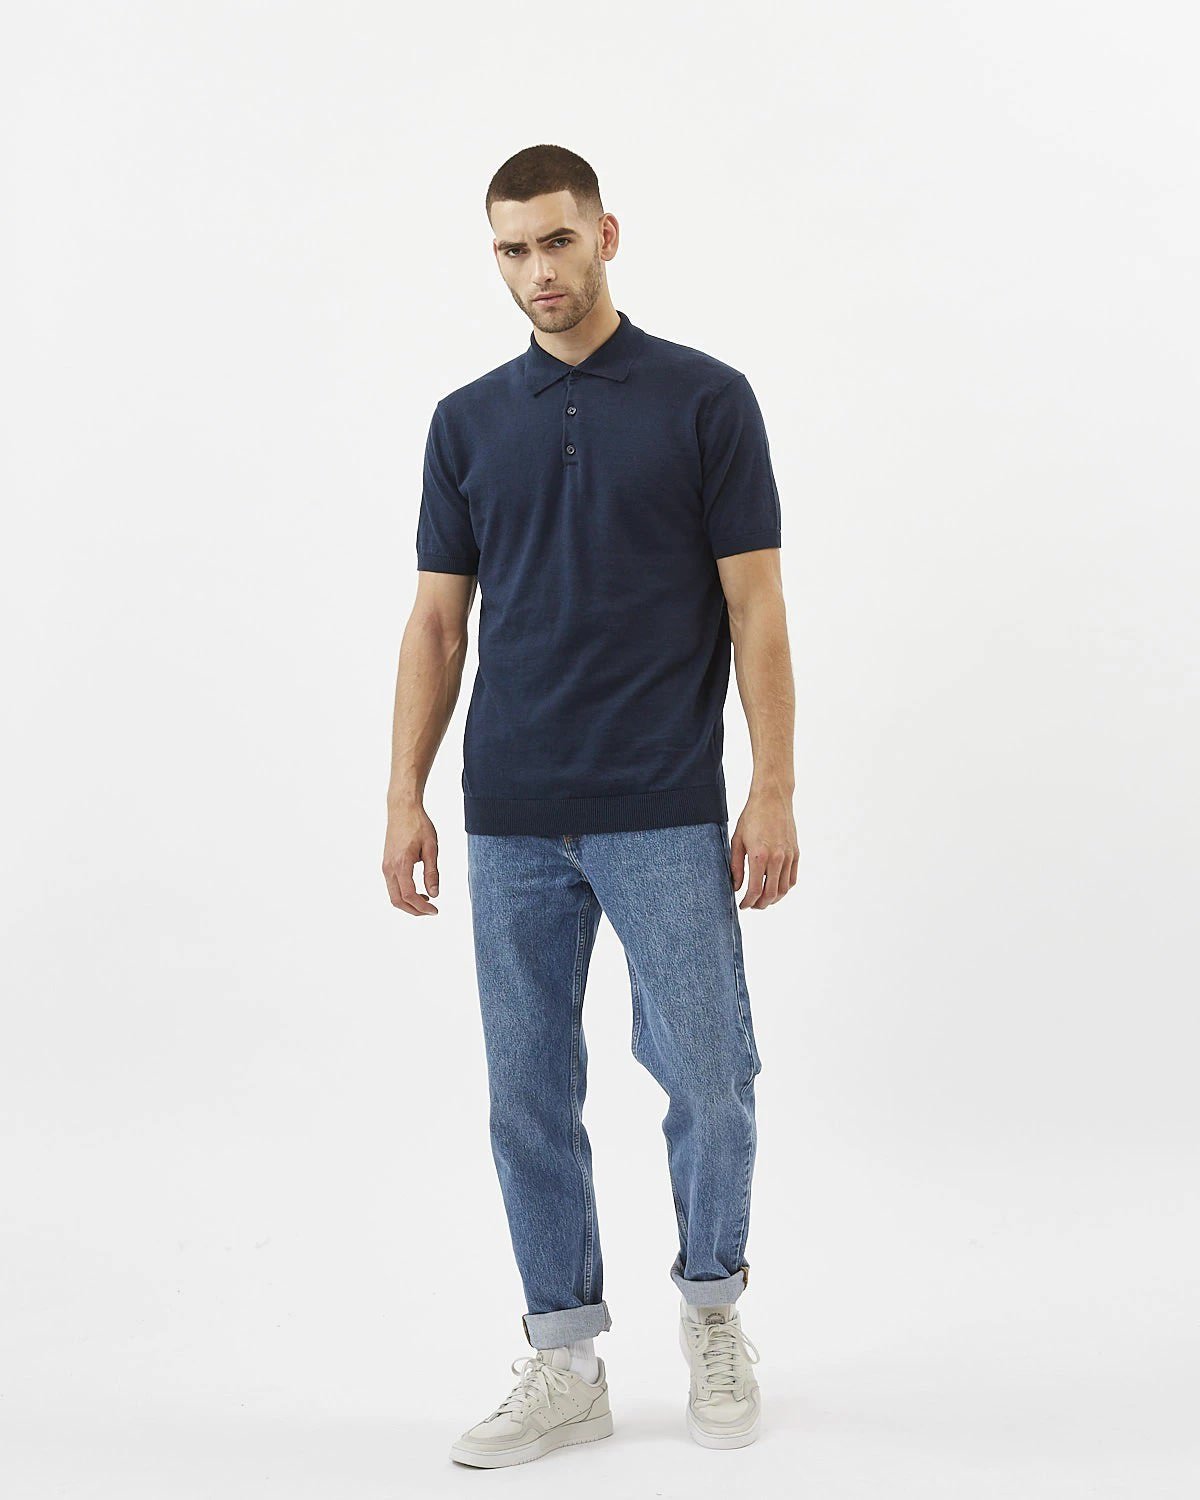 Minimum - Februus 6763 Polo-Shirt #Color_Navy Blazer